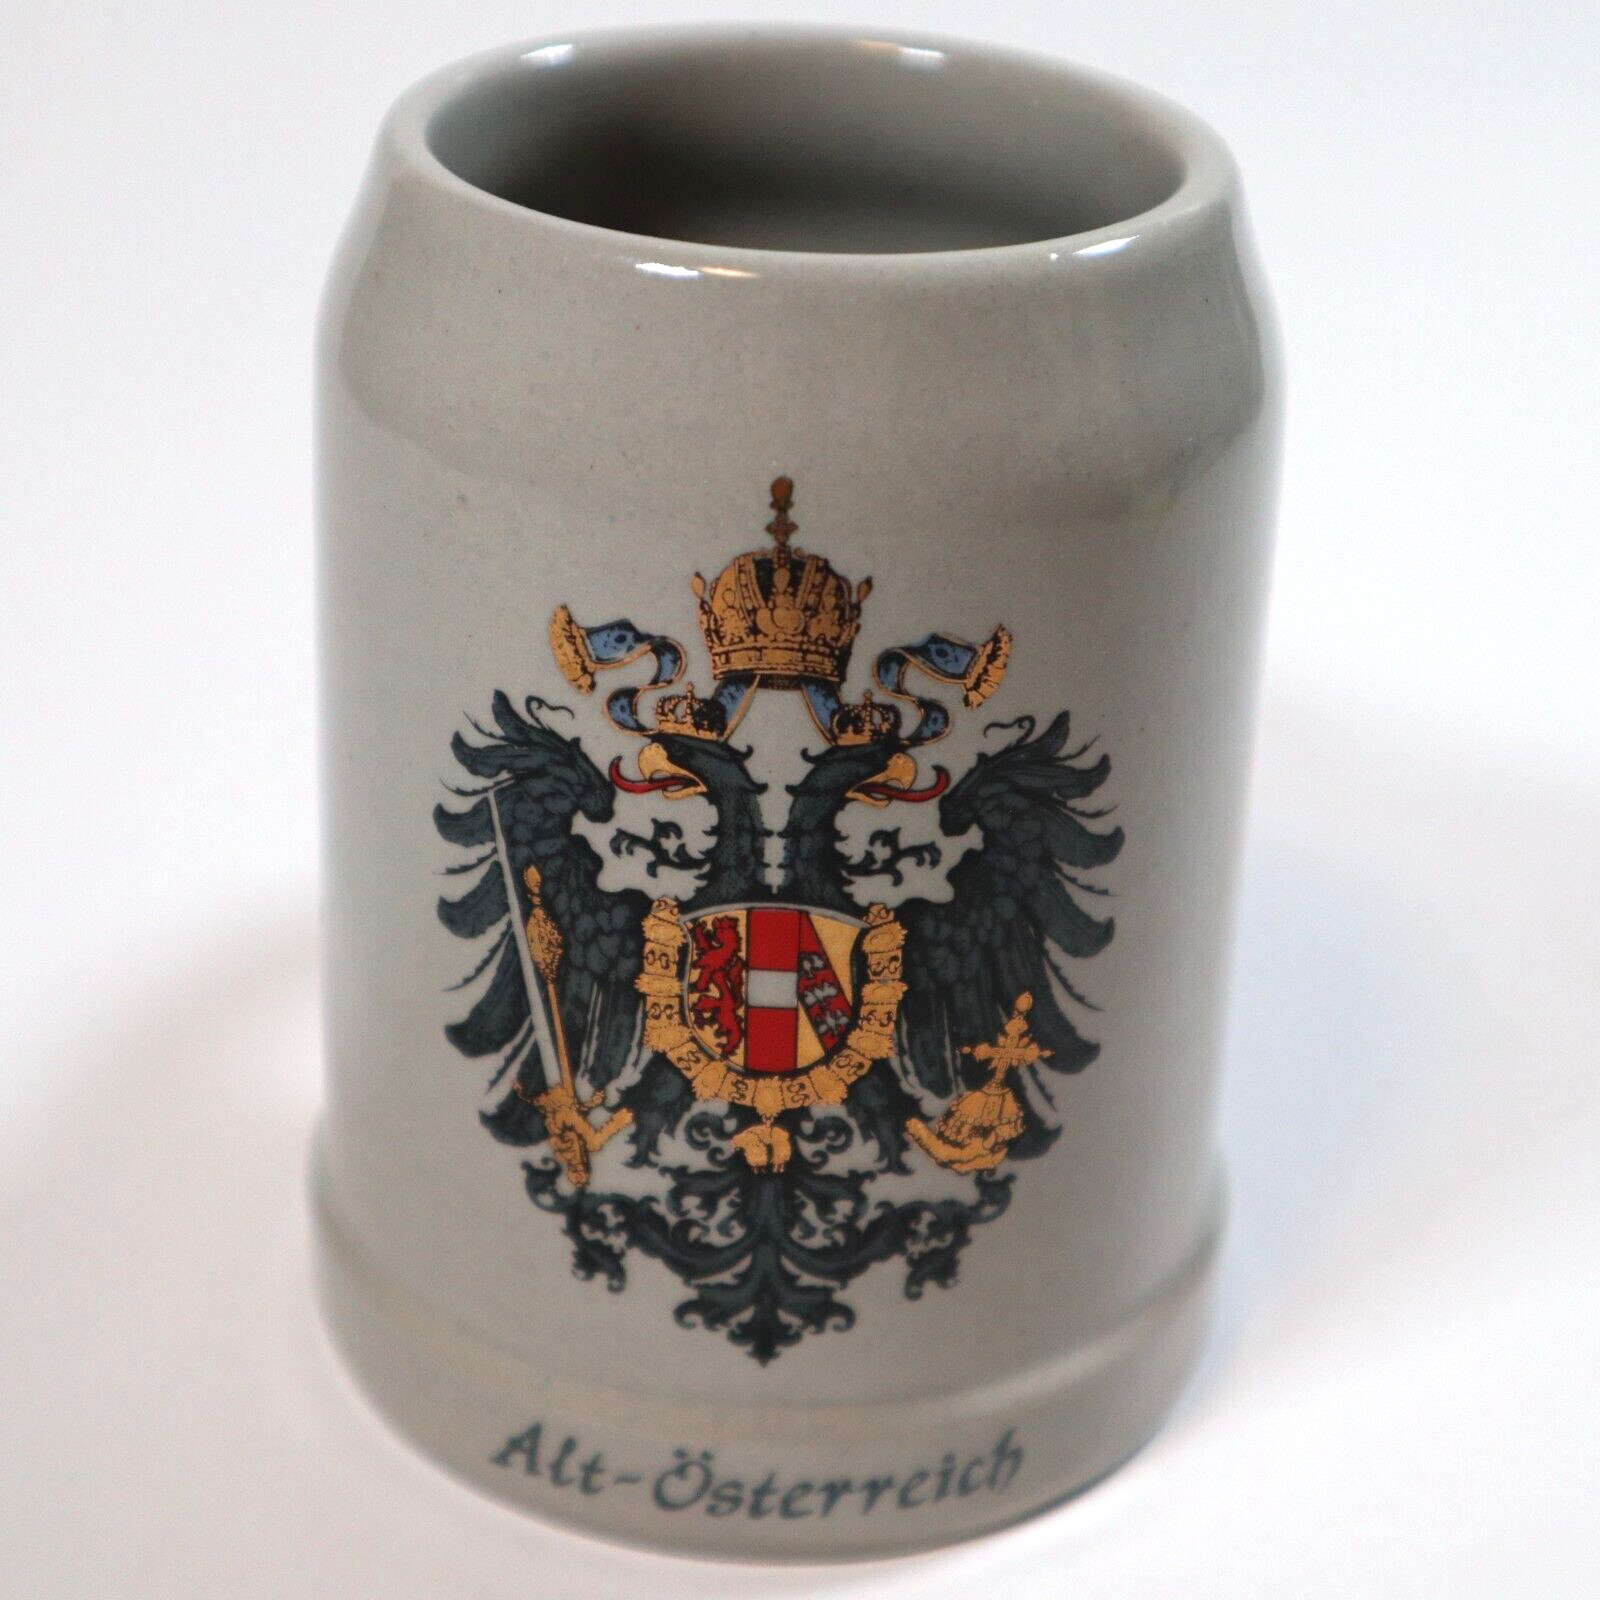 VTG Alt Osterreich Original King 0.25L Austria Beer Stein Stoneware Mug Glazed